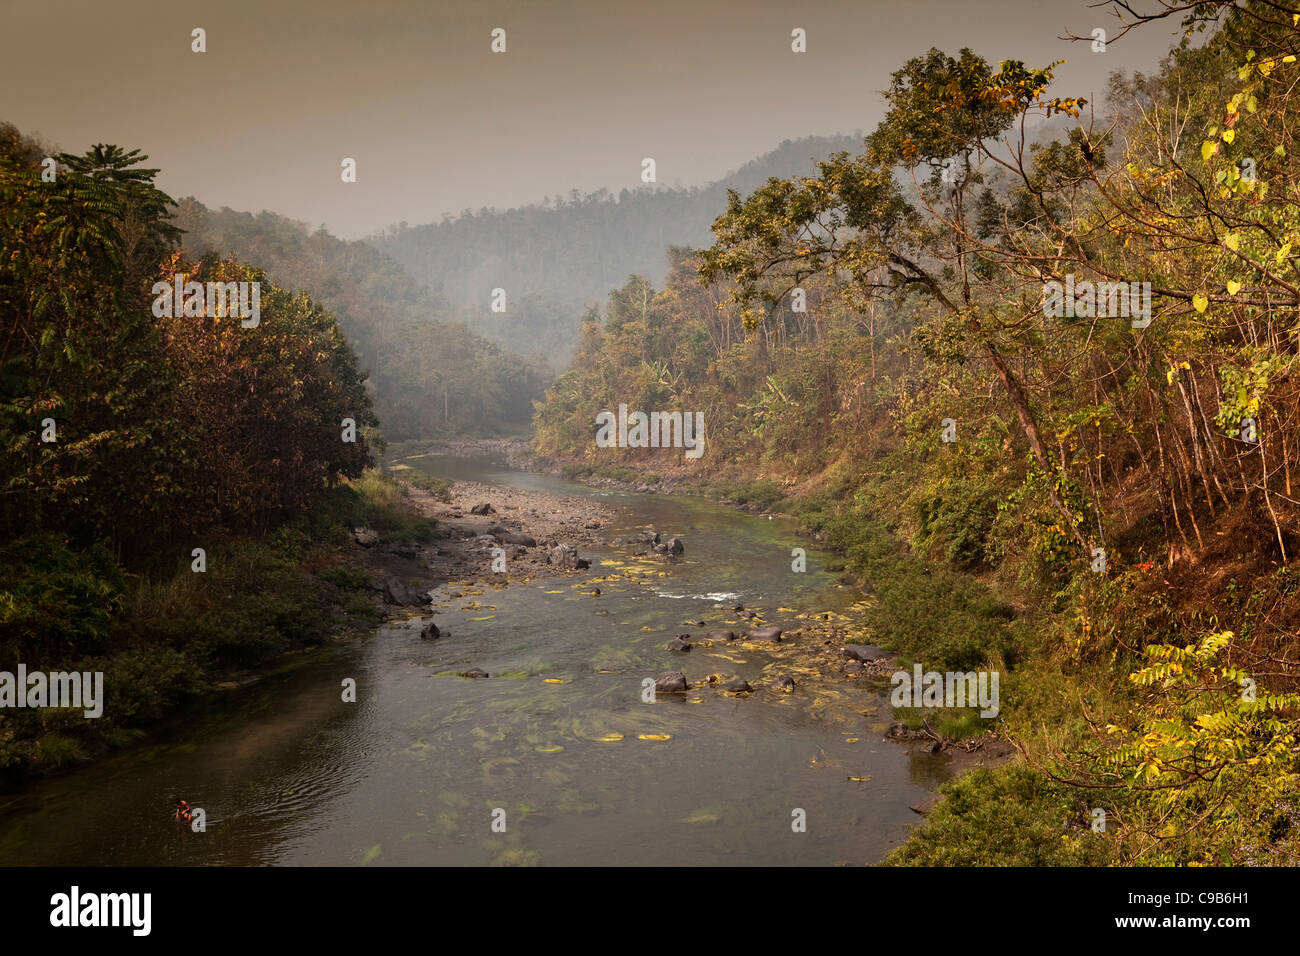 L'Inde, Nagaland, rivière Longkhum en passant par les collines boisées au début du matin Banque D'Images